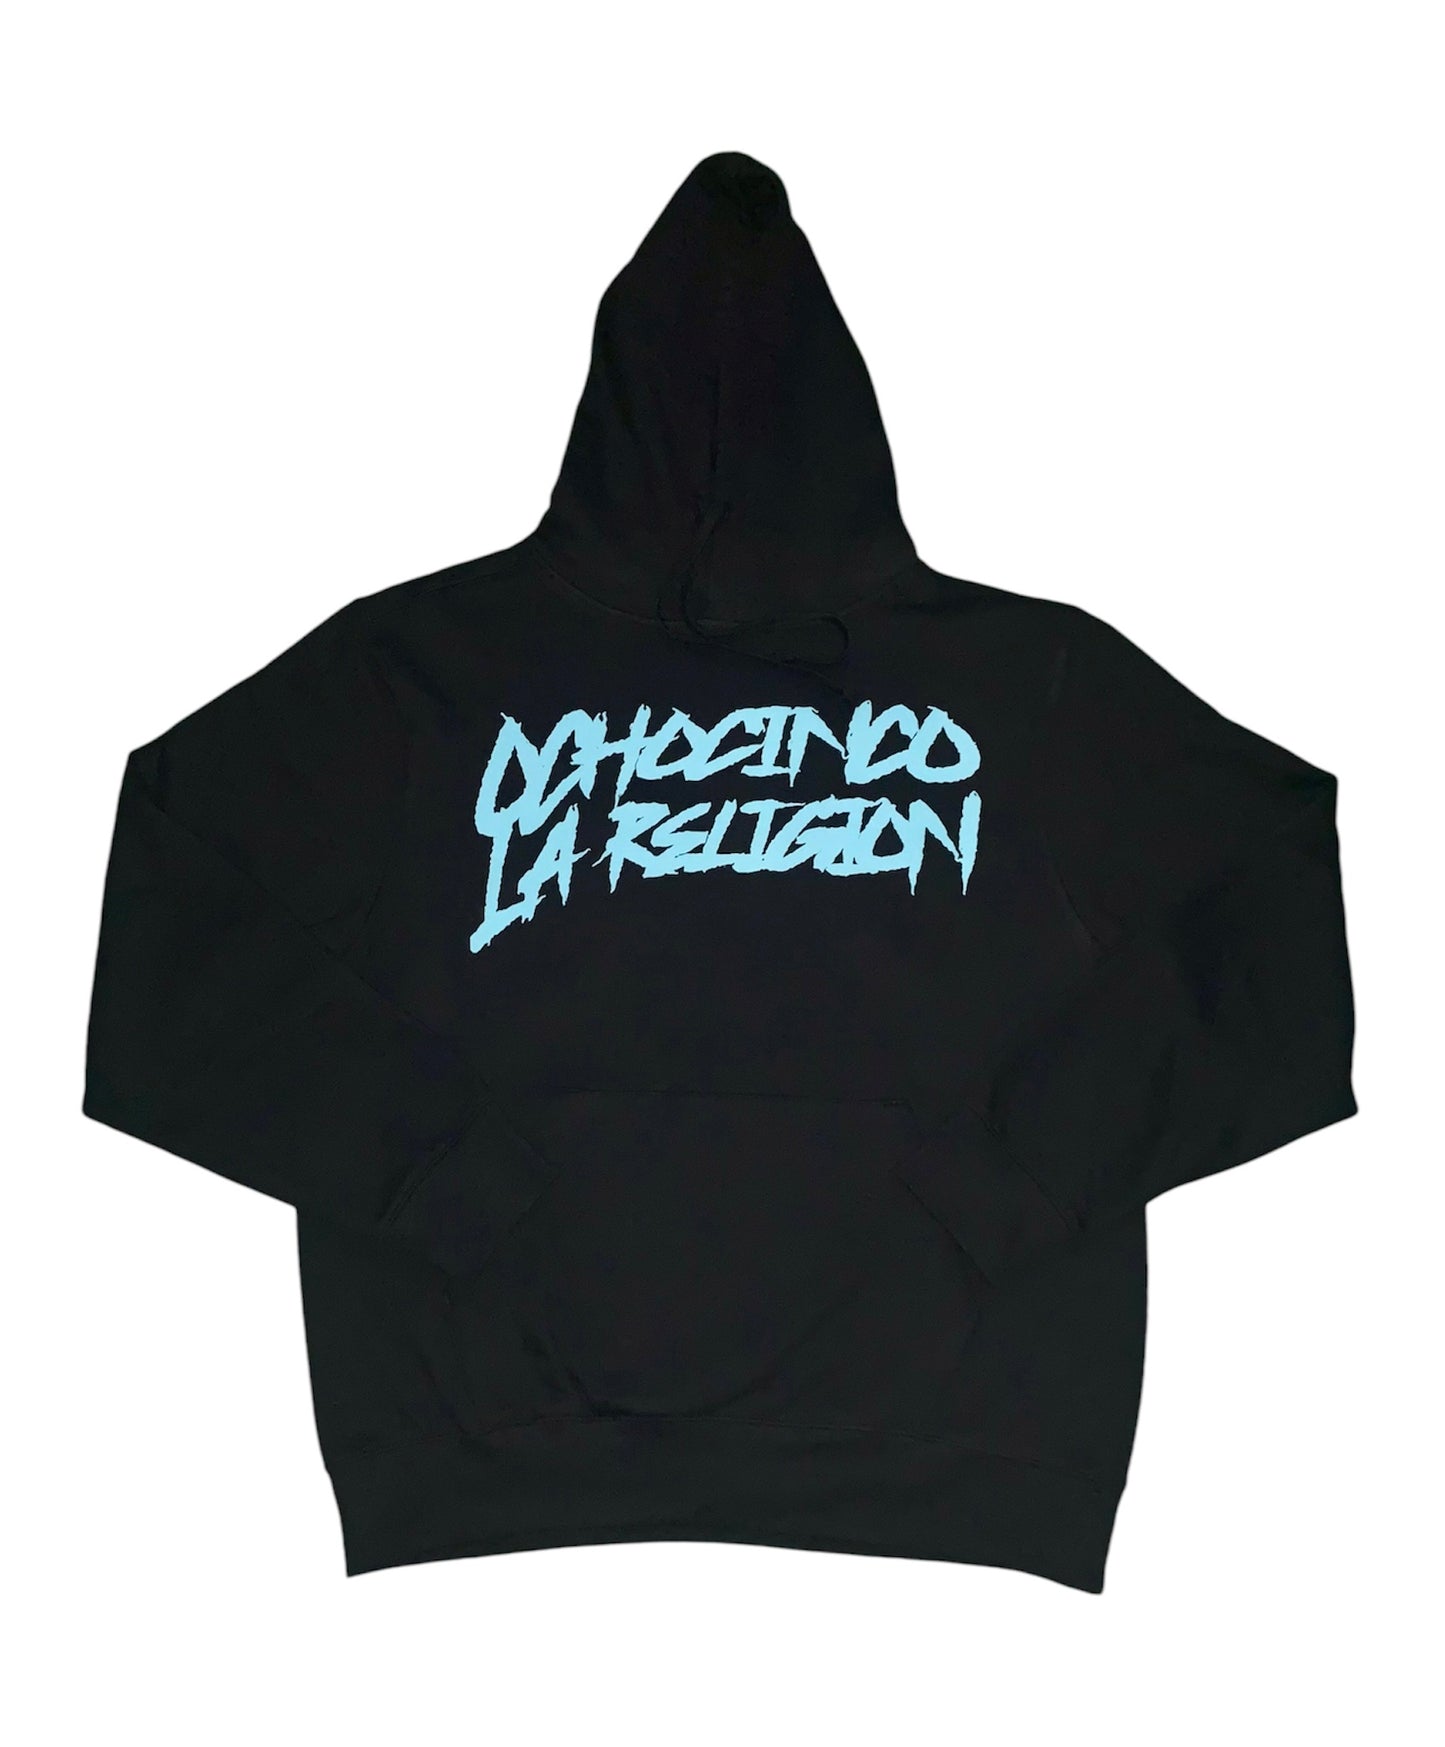 Black Medusa hoodie